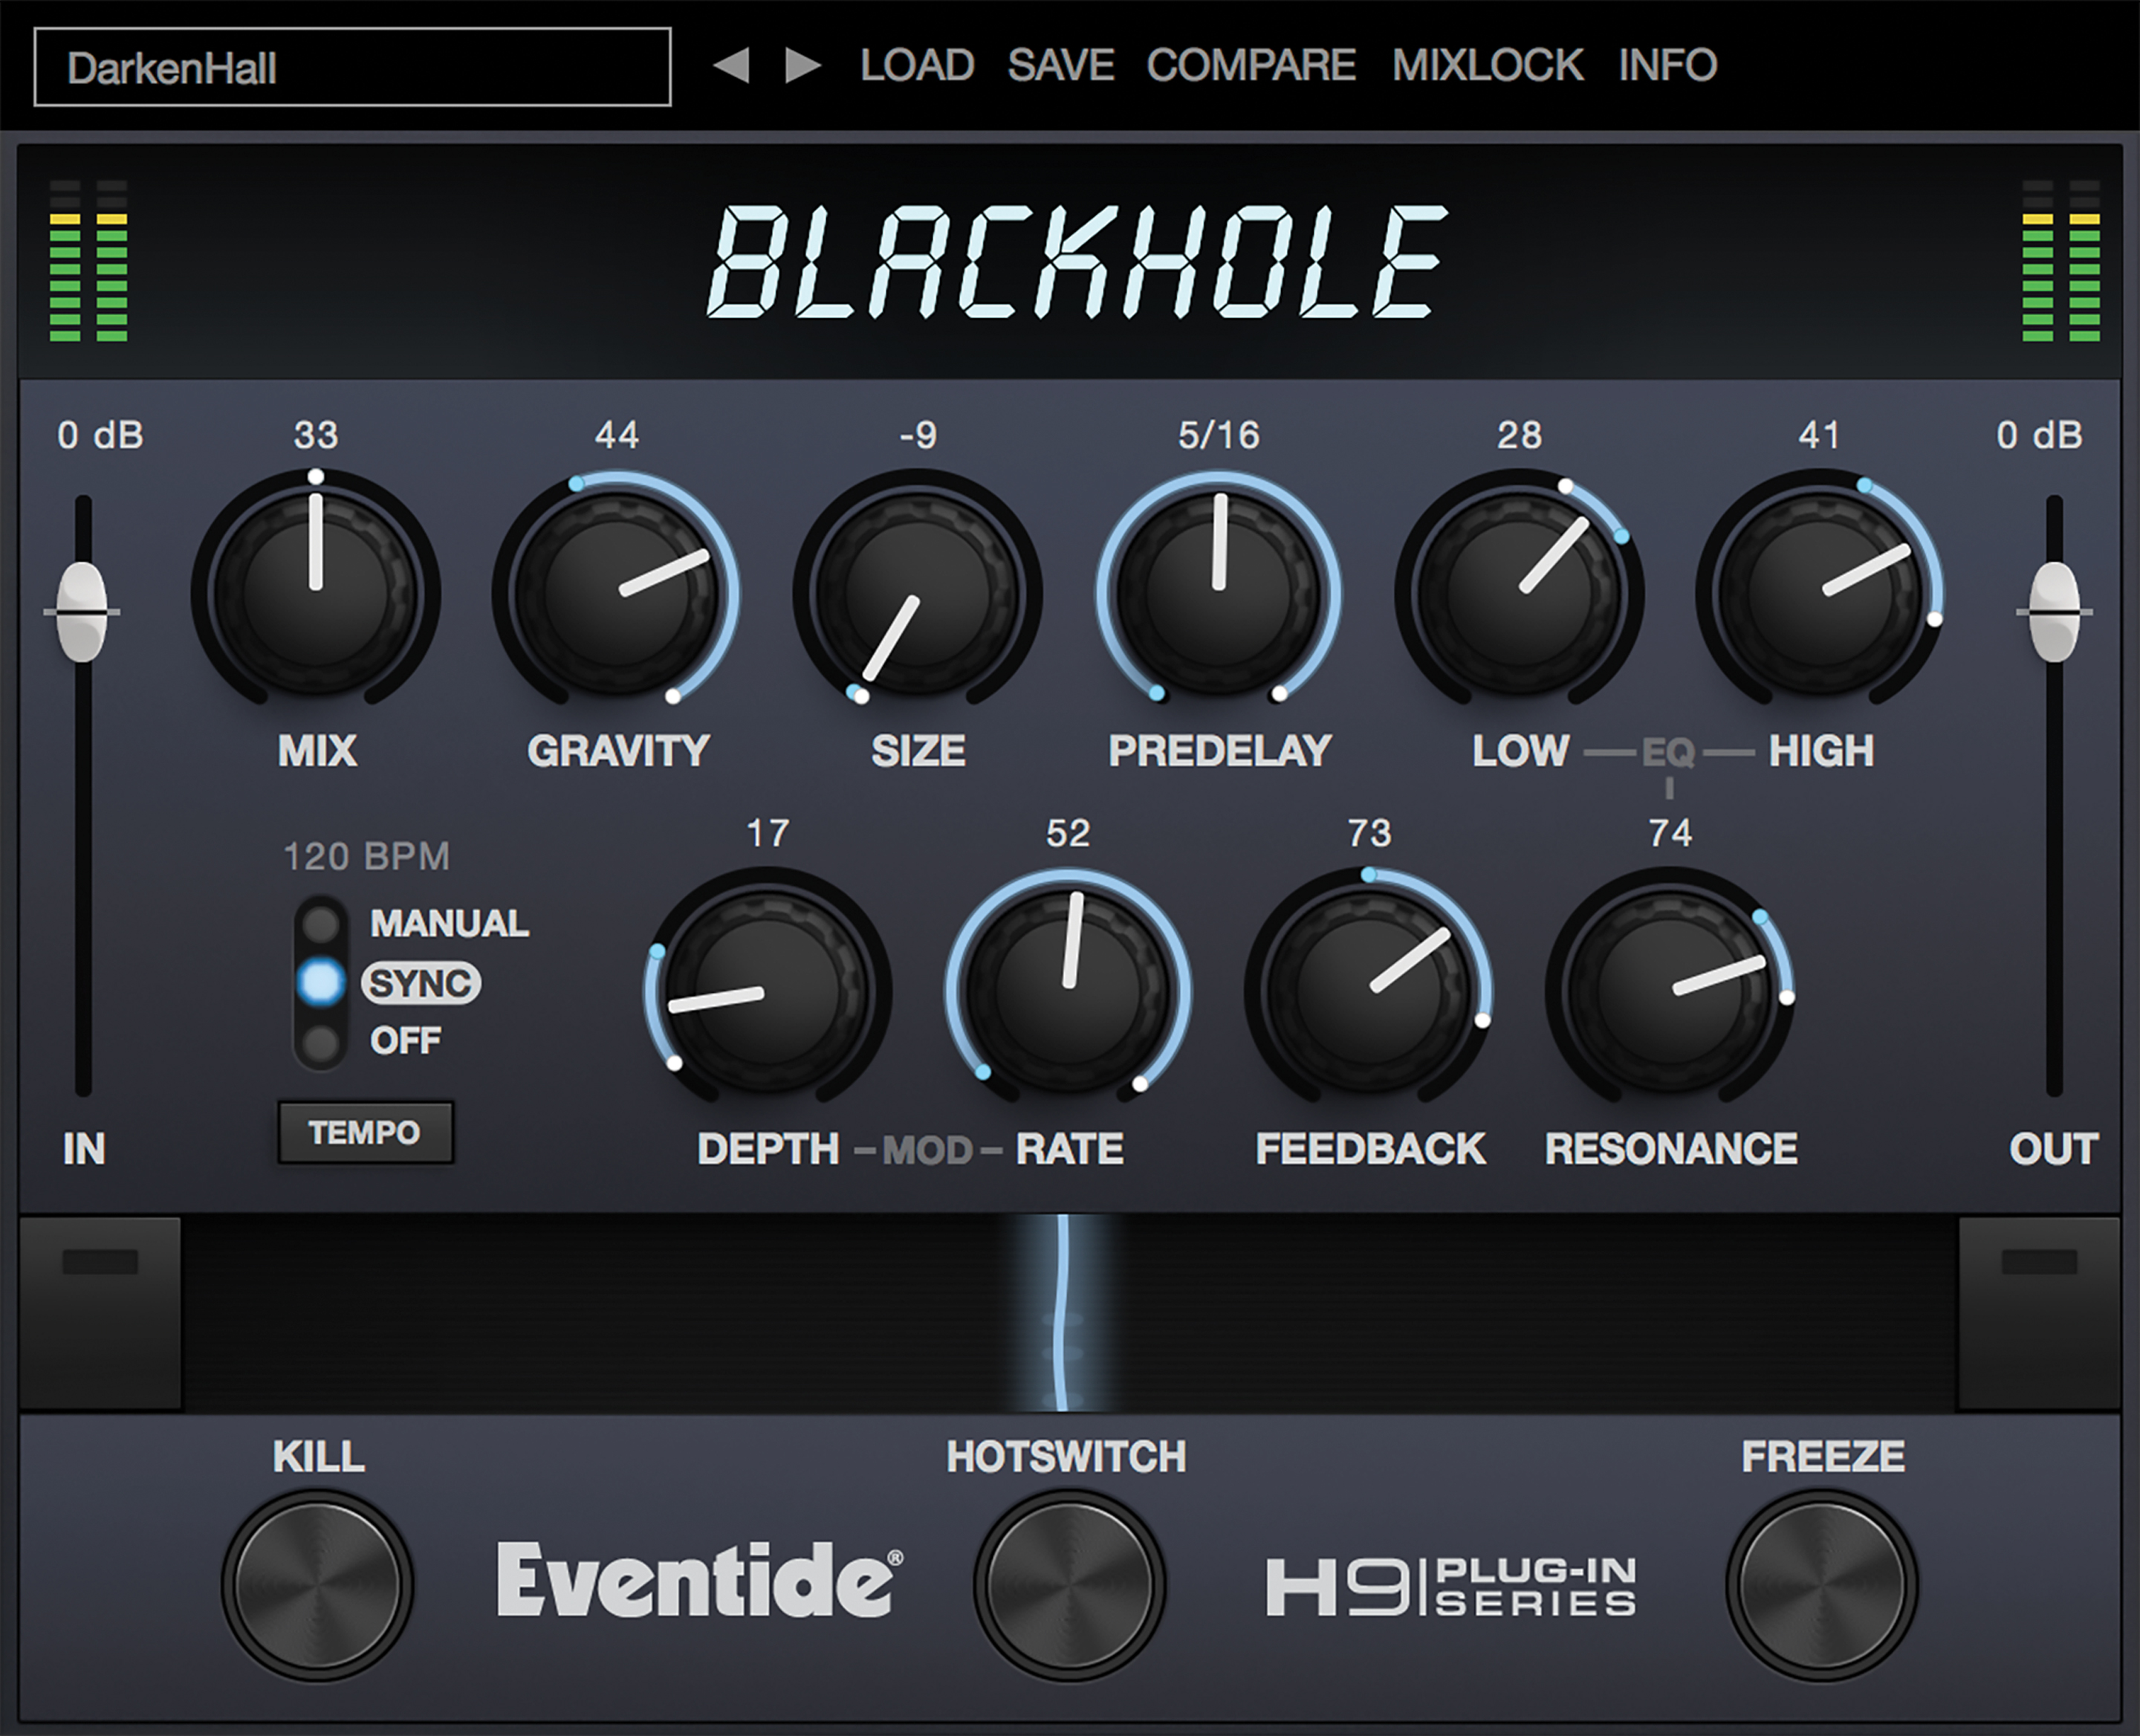 blackhole audio download